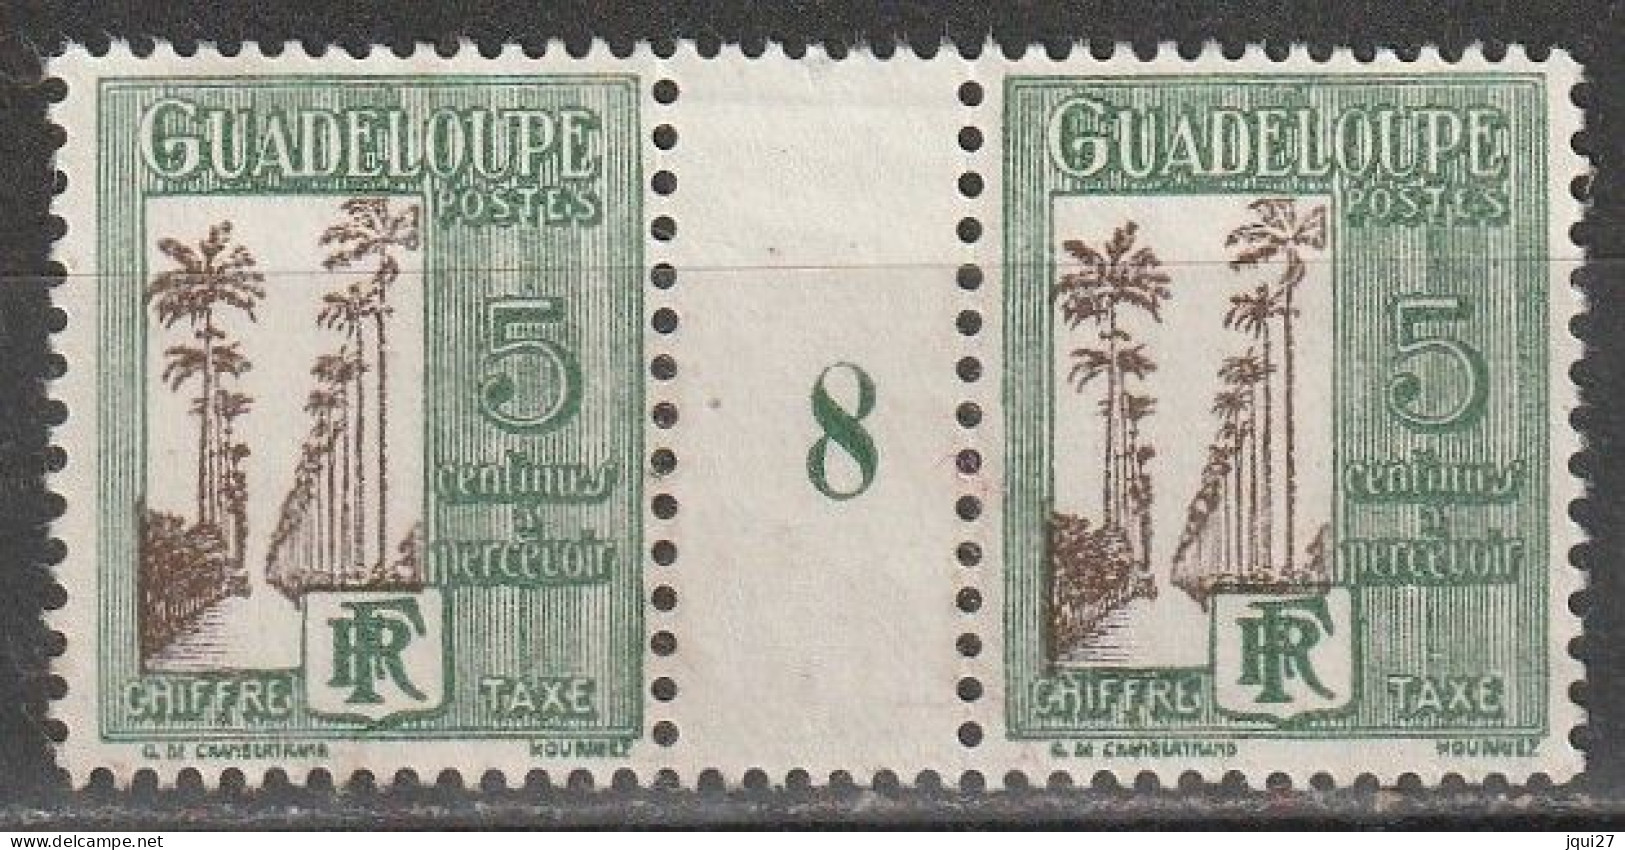 Guadeloupe Timbre Taxe N° 27 * Millésime 8 Voir Description - Timbres-taxe